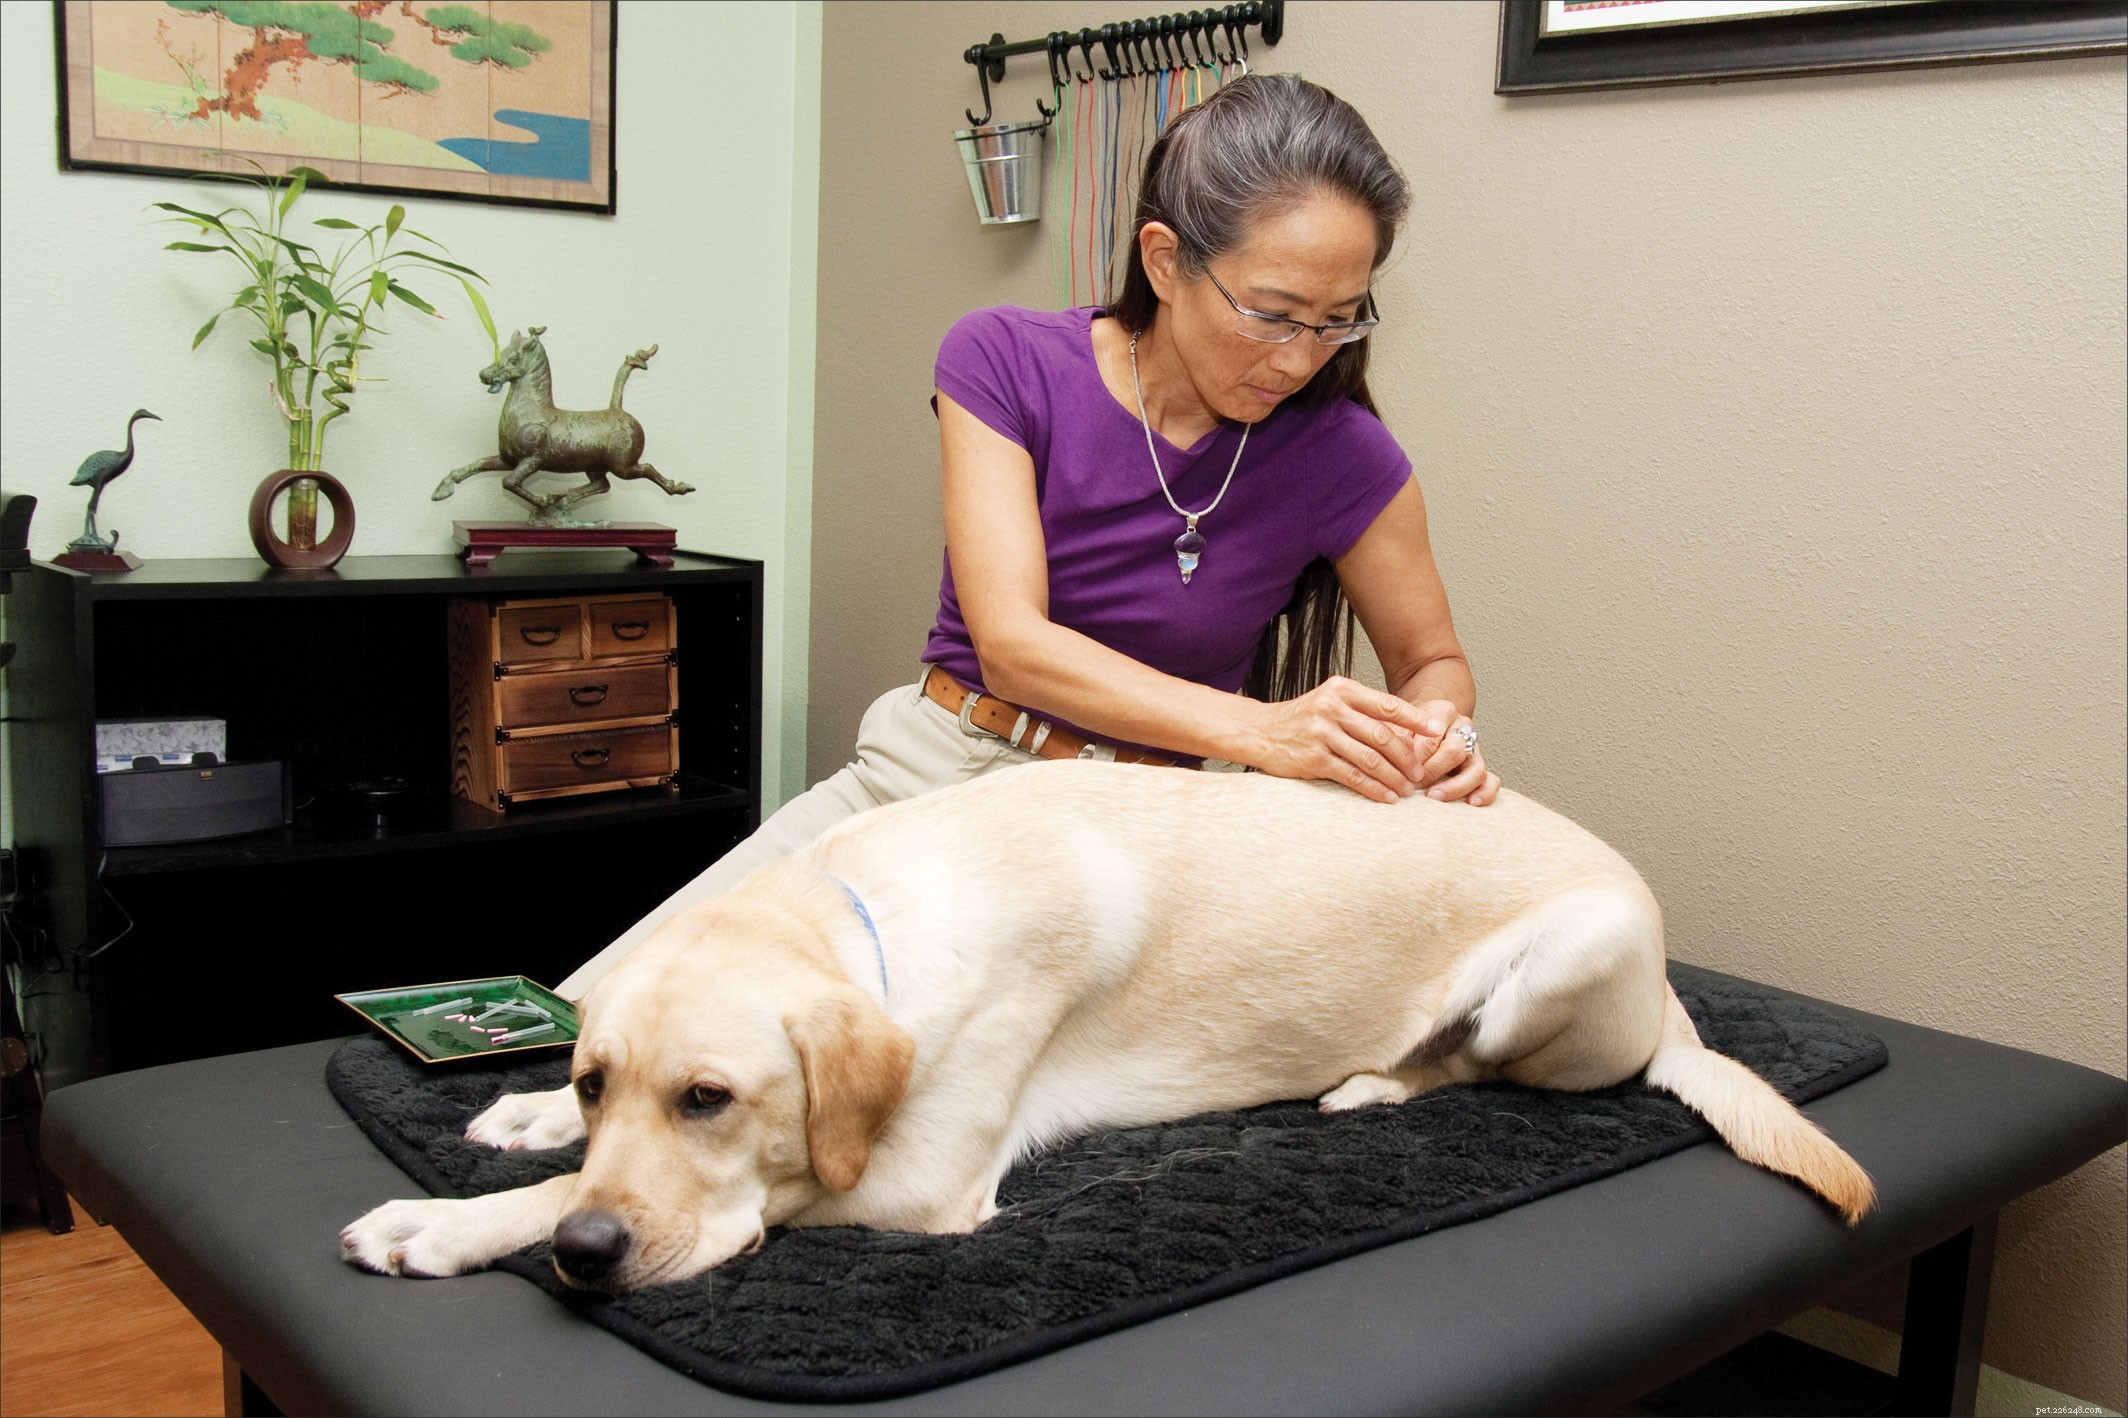 Utilizzo dell agopuntura veterinaria come metodo di guarigione complementare